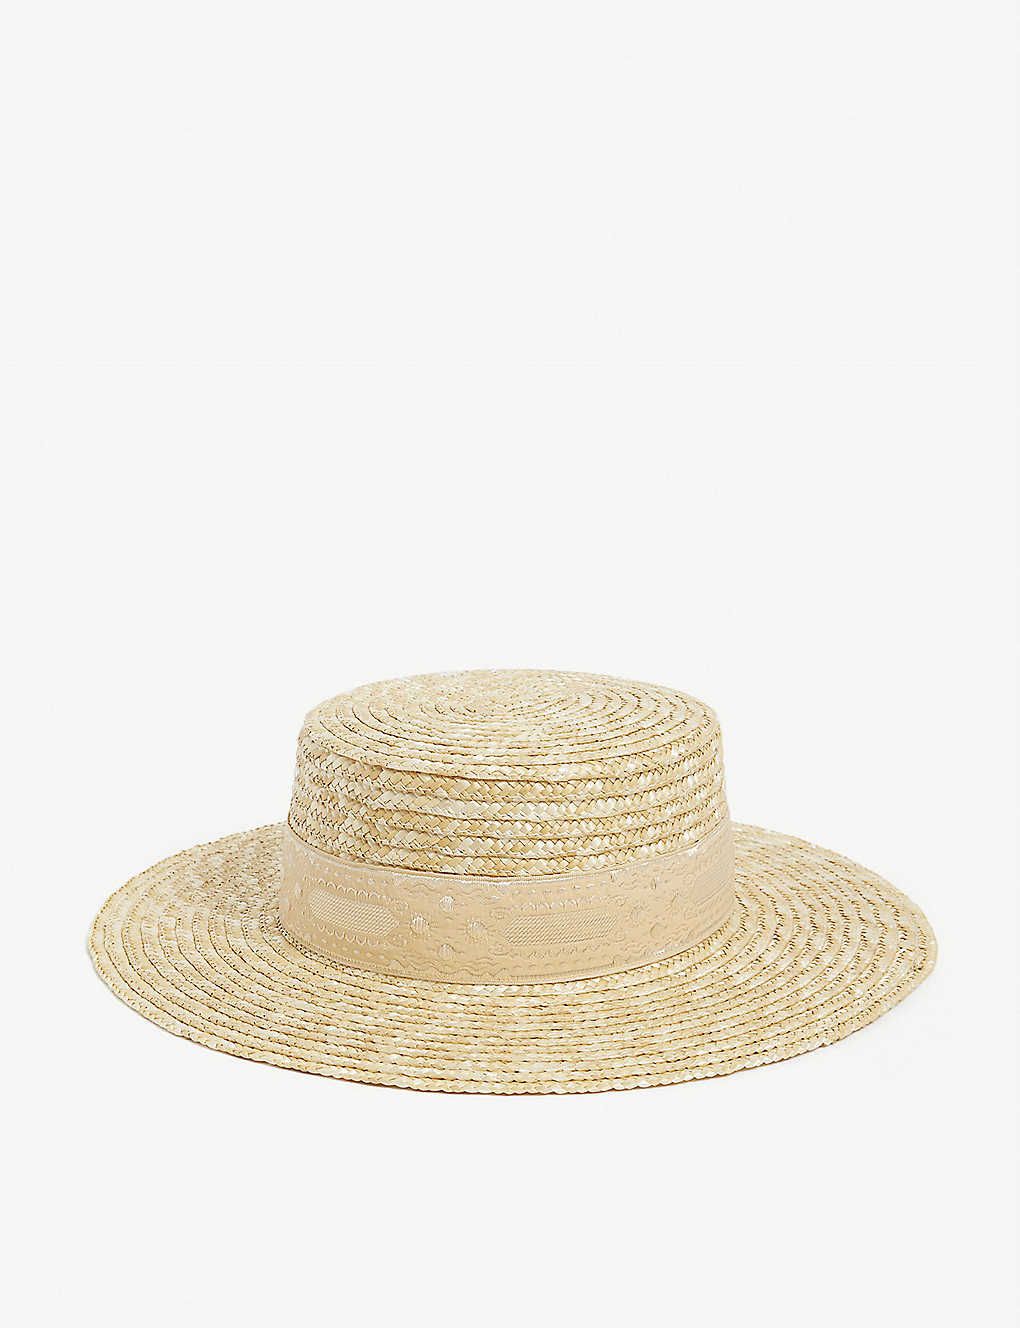 Spencer boater hat | Selfridges